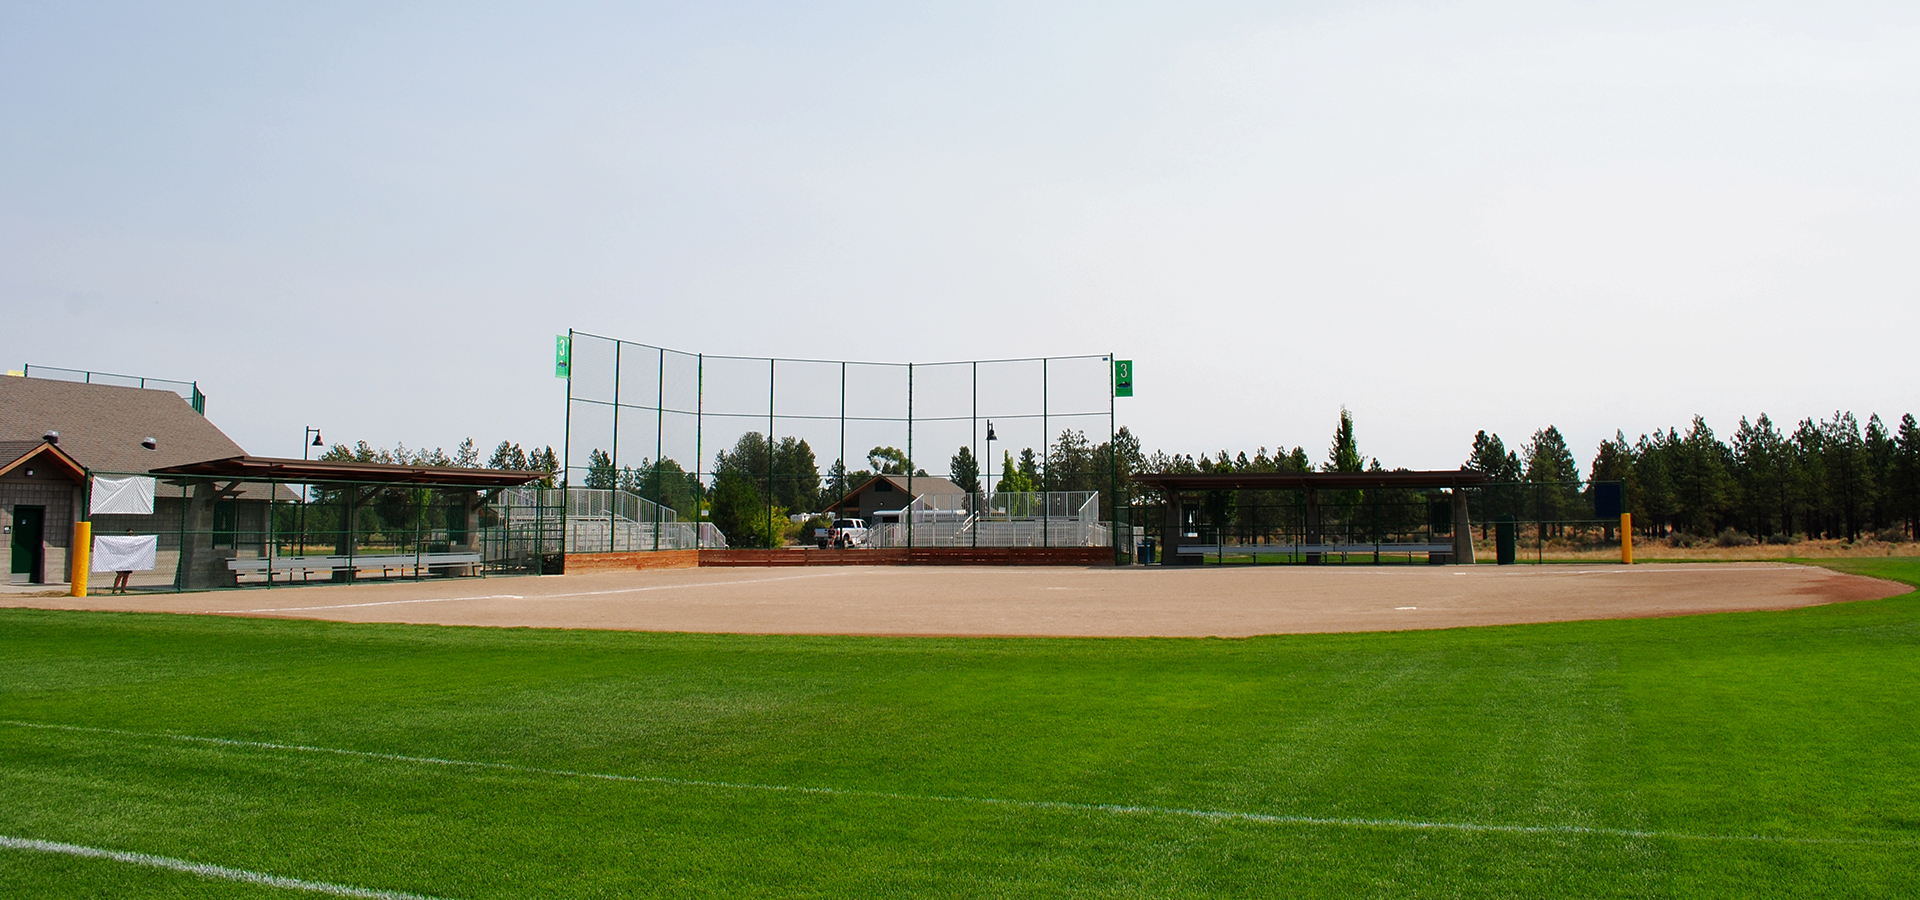 A softball field at Pine Nursery Park.